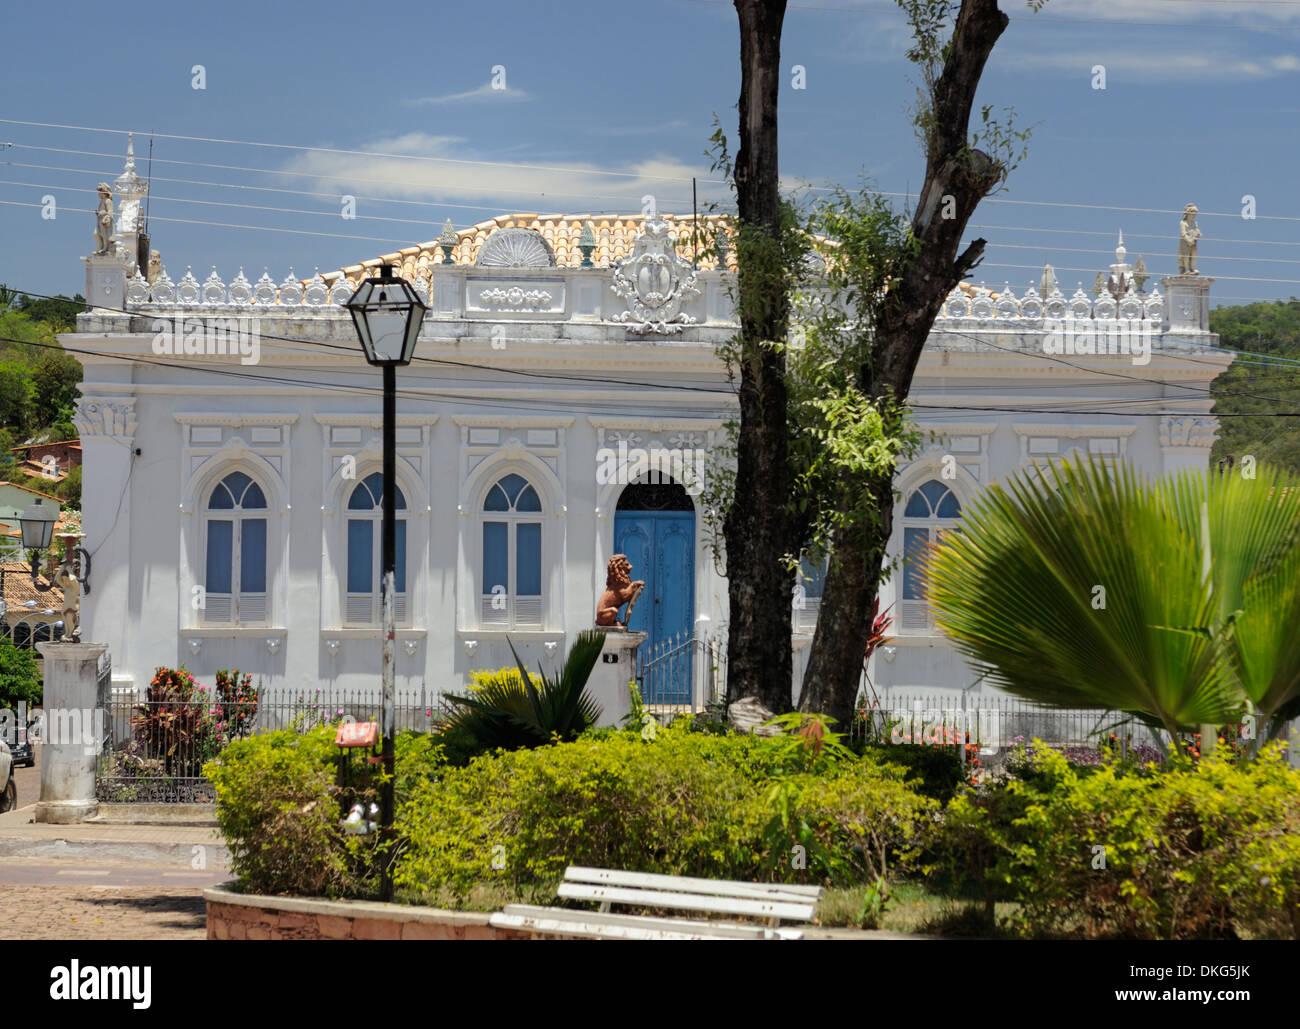 Brasilien, Bahia, Lencois: Prefeitura, der alte Sitz der Regierung in Lencois, mit seinen Neo-klassische Details aus dem Jahr 1860. Stockfoto